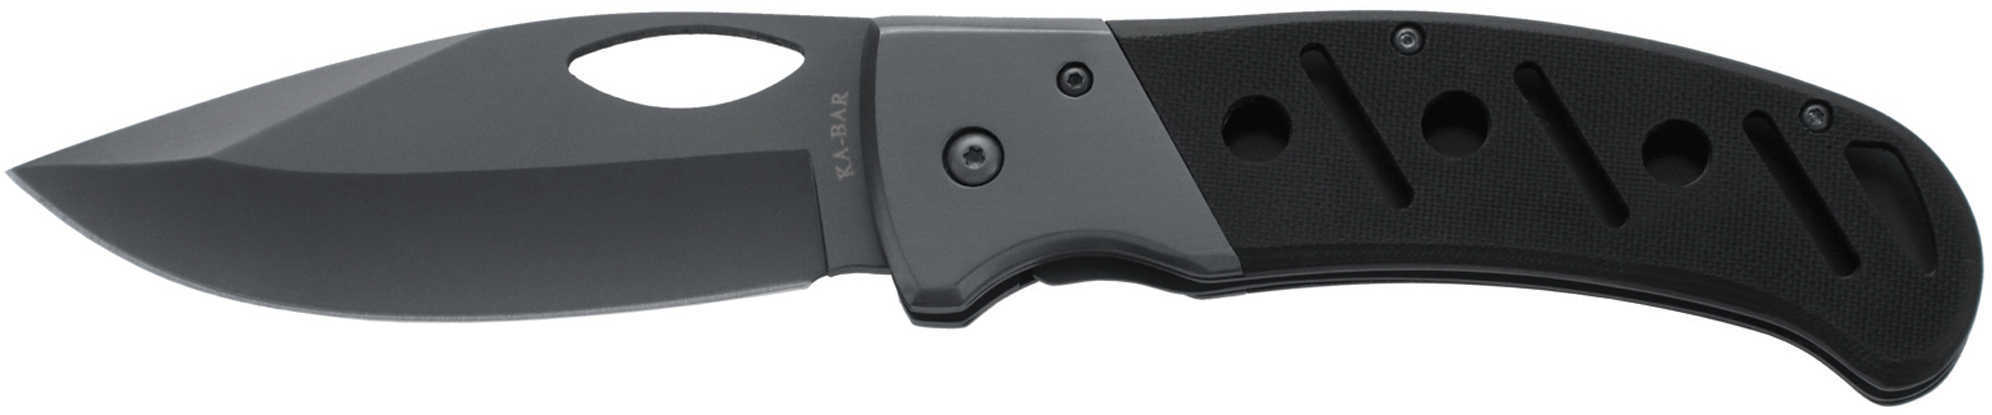 KA-BAR Gila Folder Knife Md: 3077